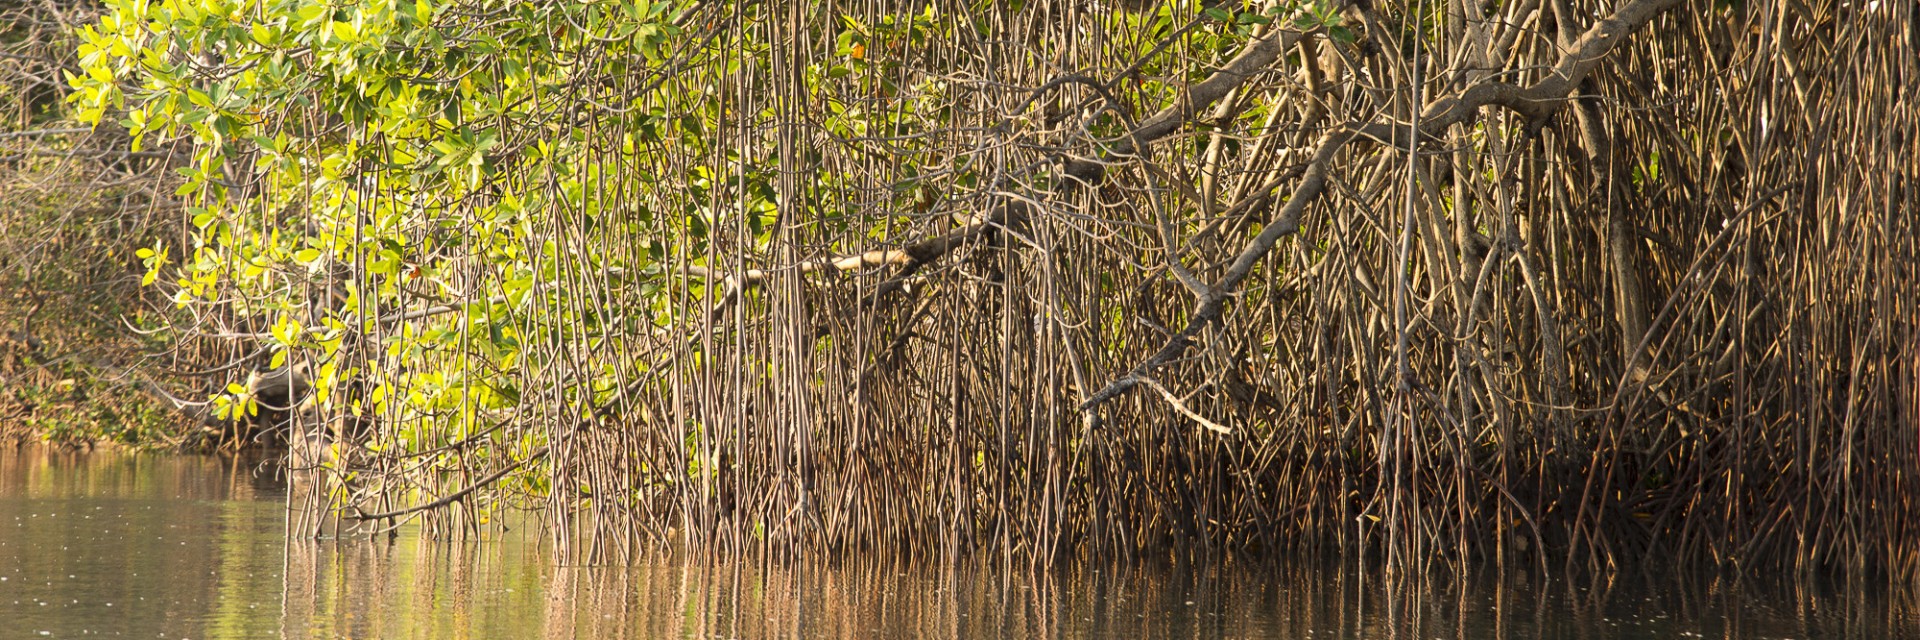 Chiapas mangrovie